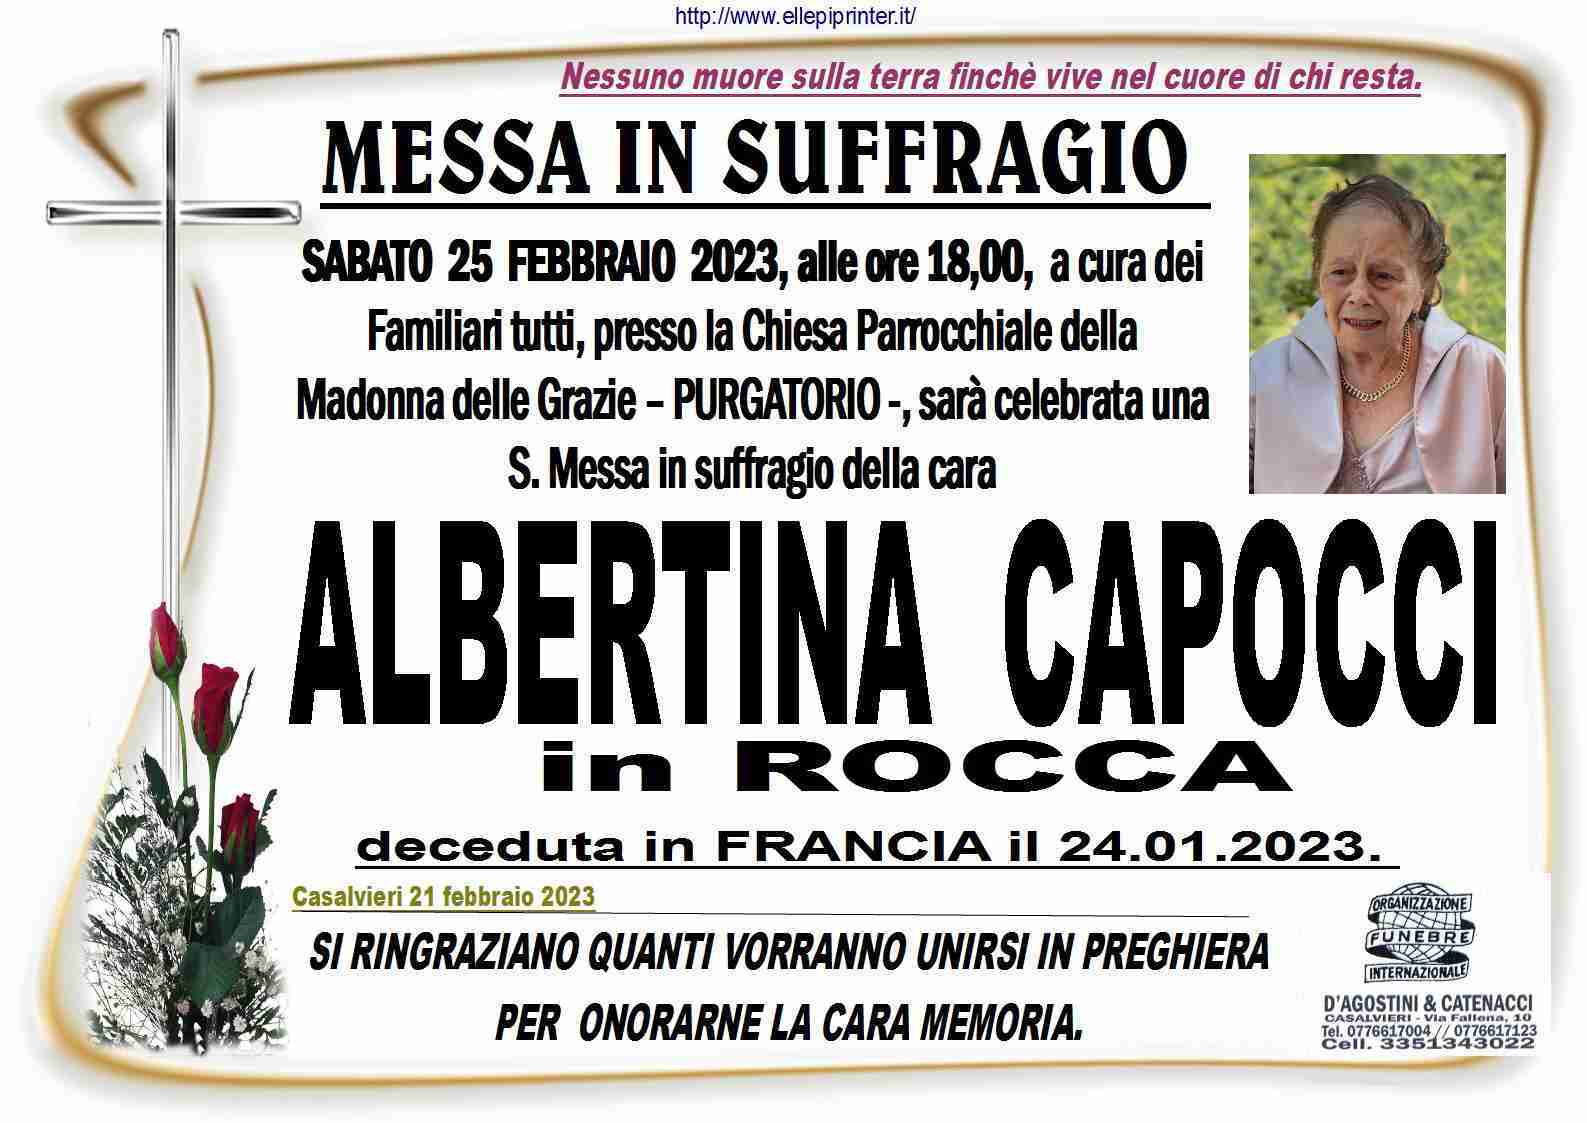 Albertina Capocci